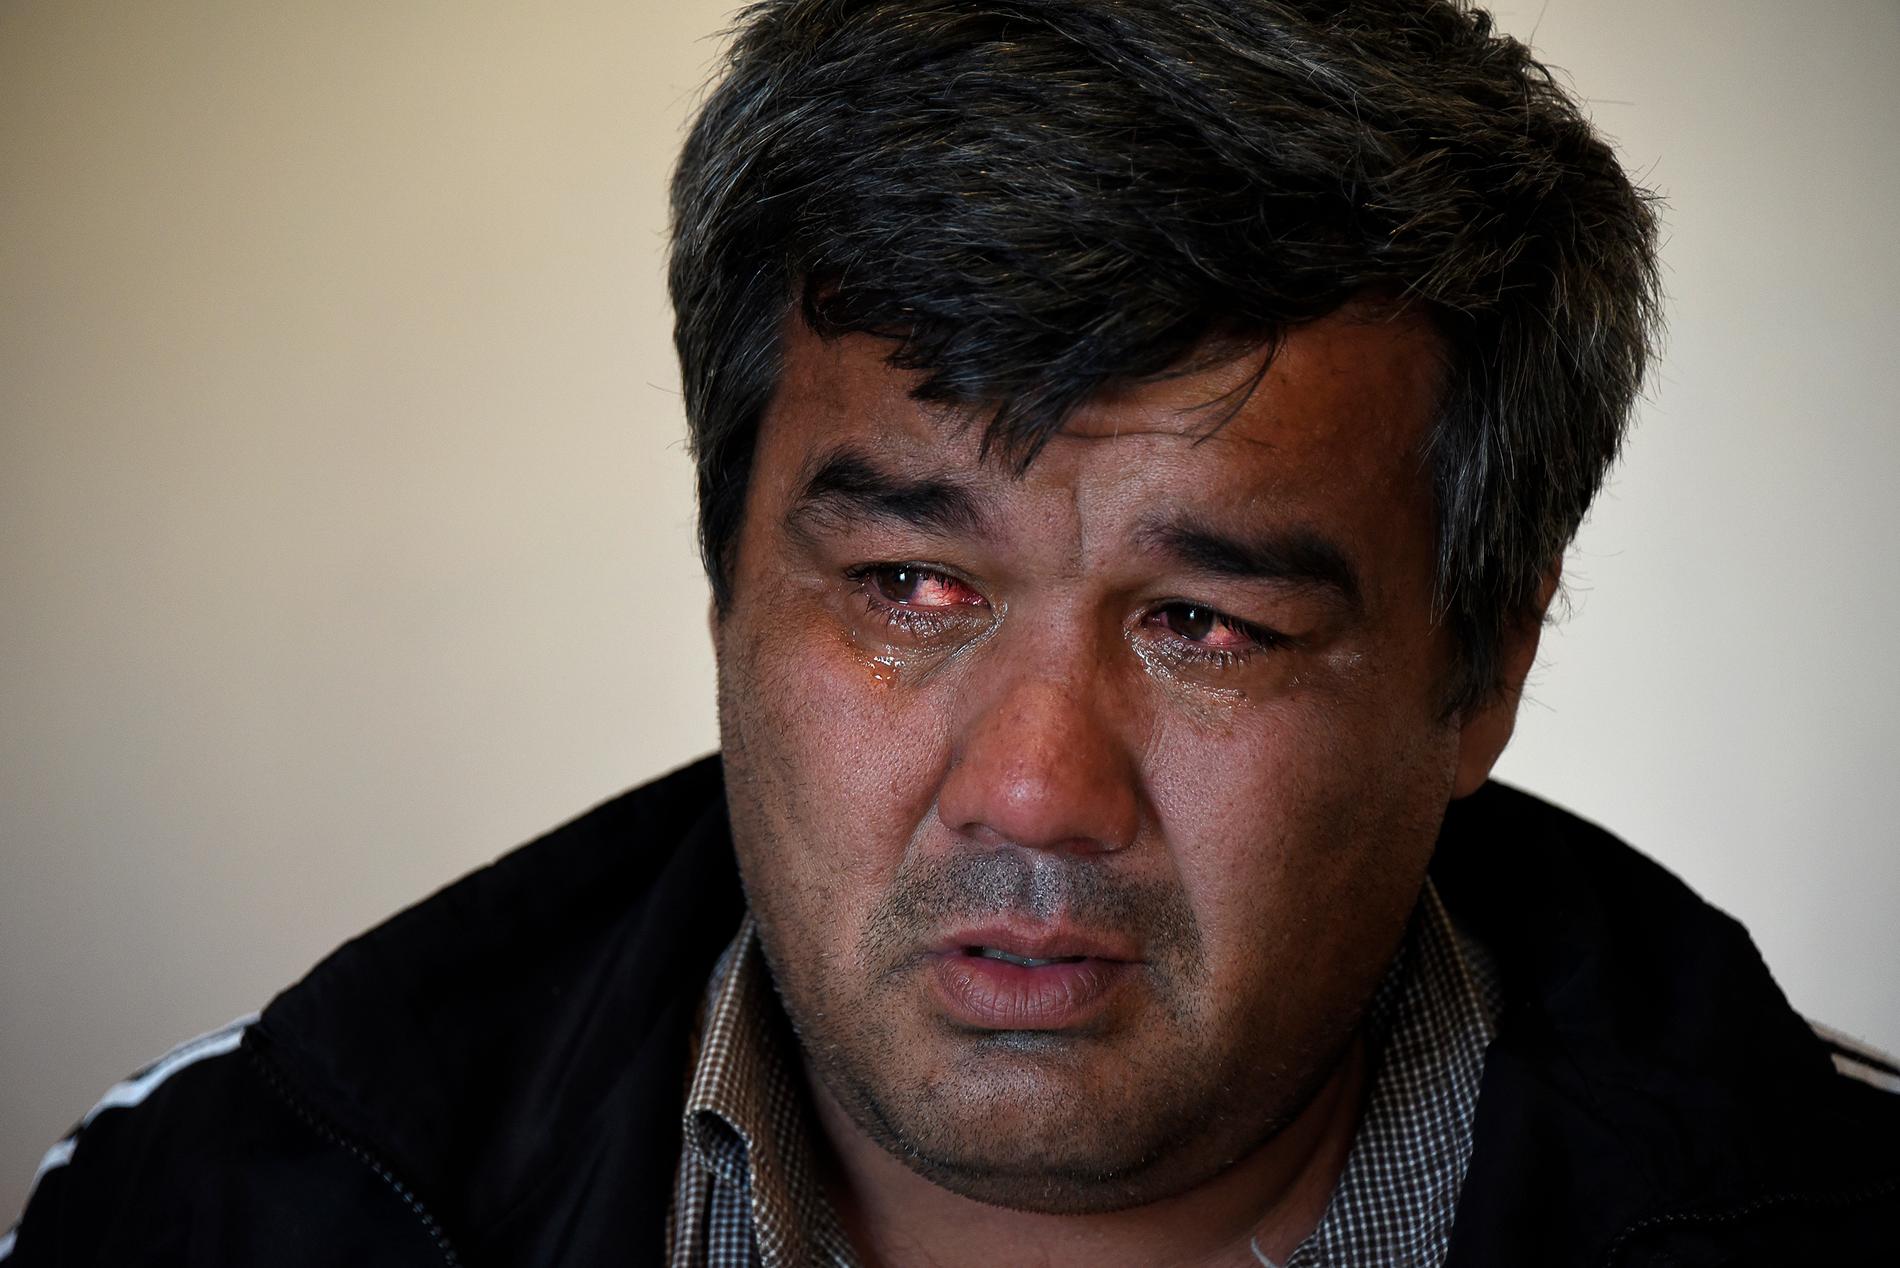 Olim Akilov i Samarkand i Uzbekistan visste inte att hans bror erkänt att han begått ett terrorbrott i Stockholm.